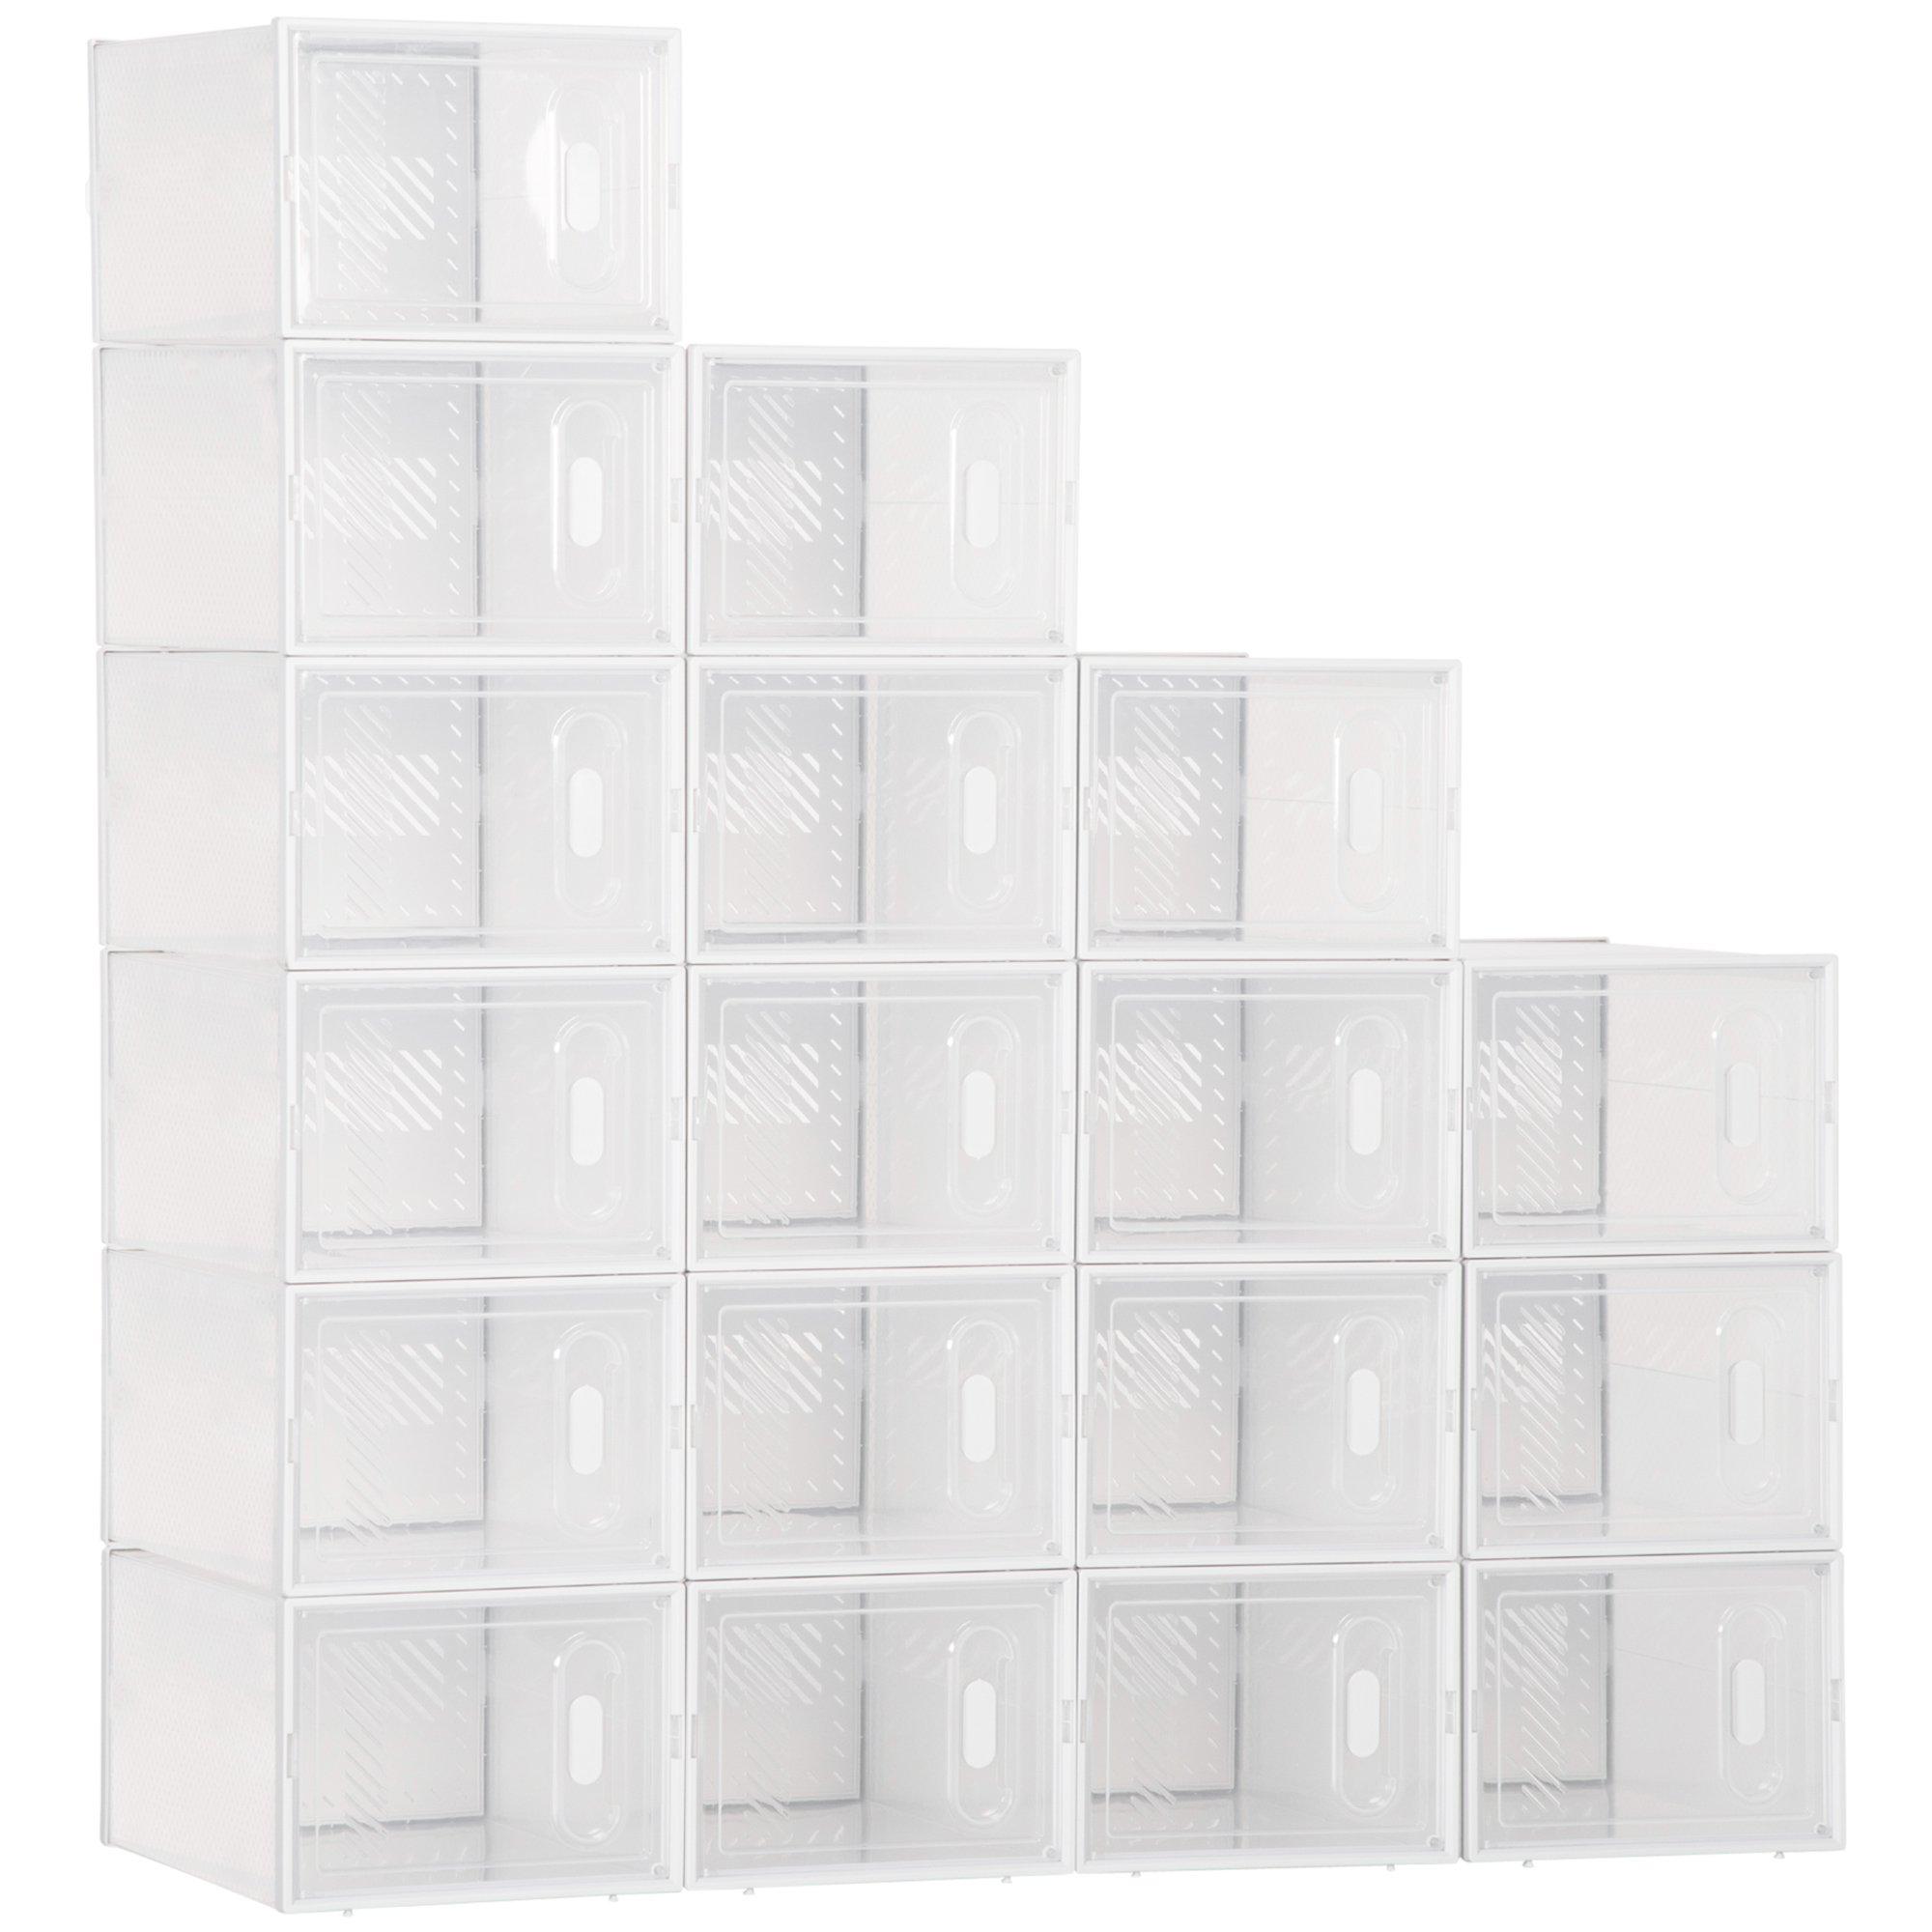 18PCS Stackable Shoe Box Clear Plastic Shoe Storage Box